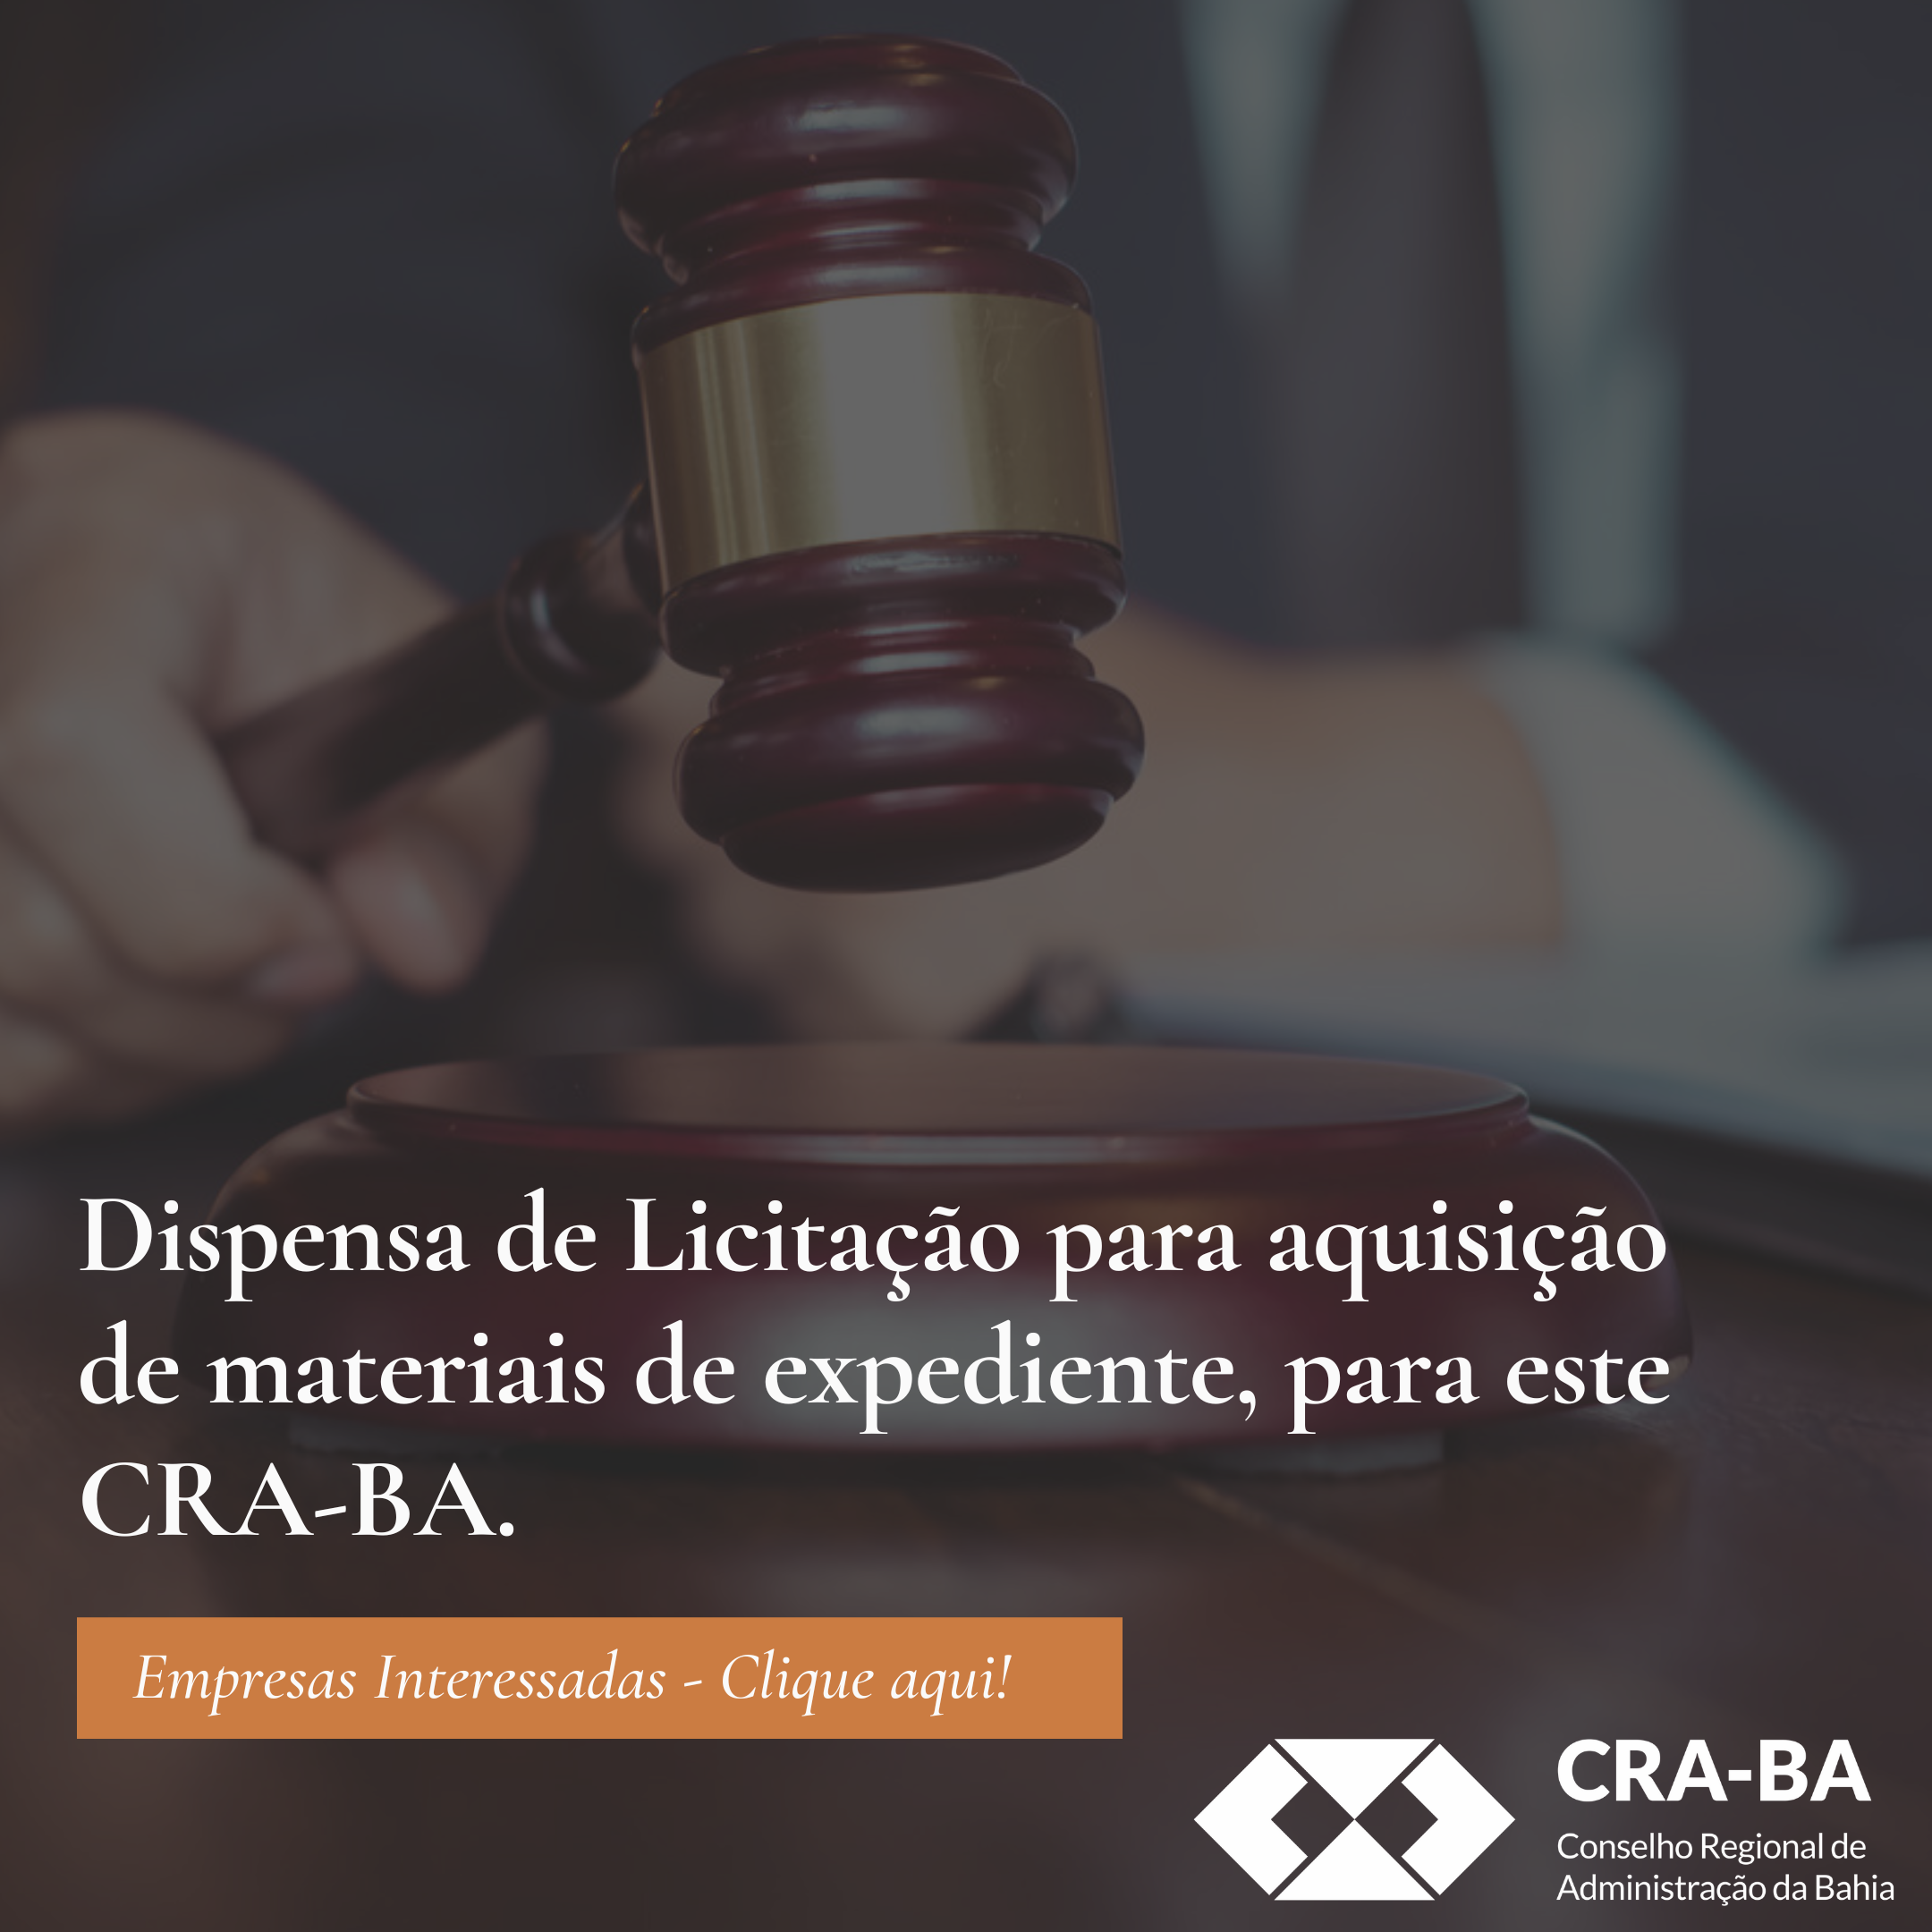 You are currently viewing Dispensa de Licitação para aquisição de materiais de expediente para atender às necessidades deste CRA-BA